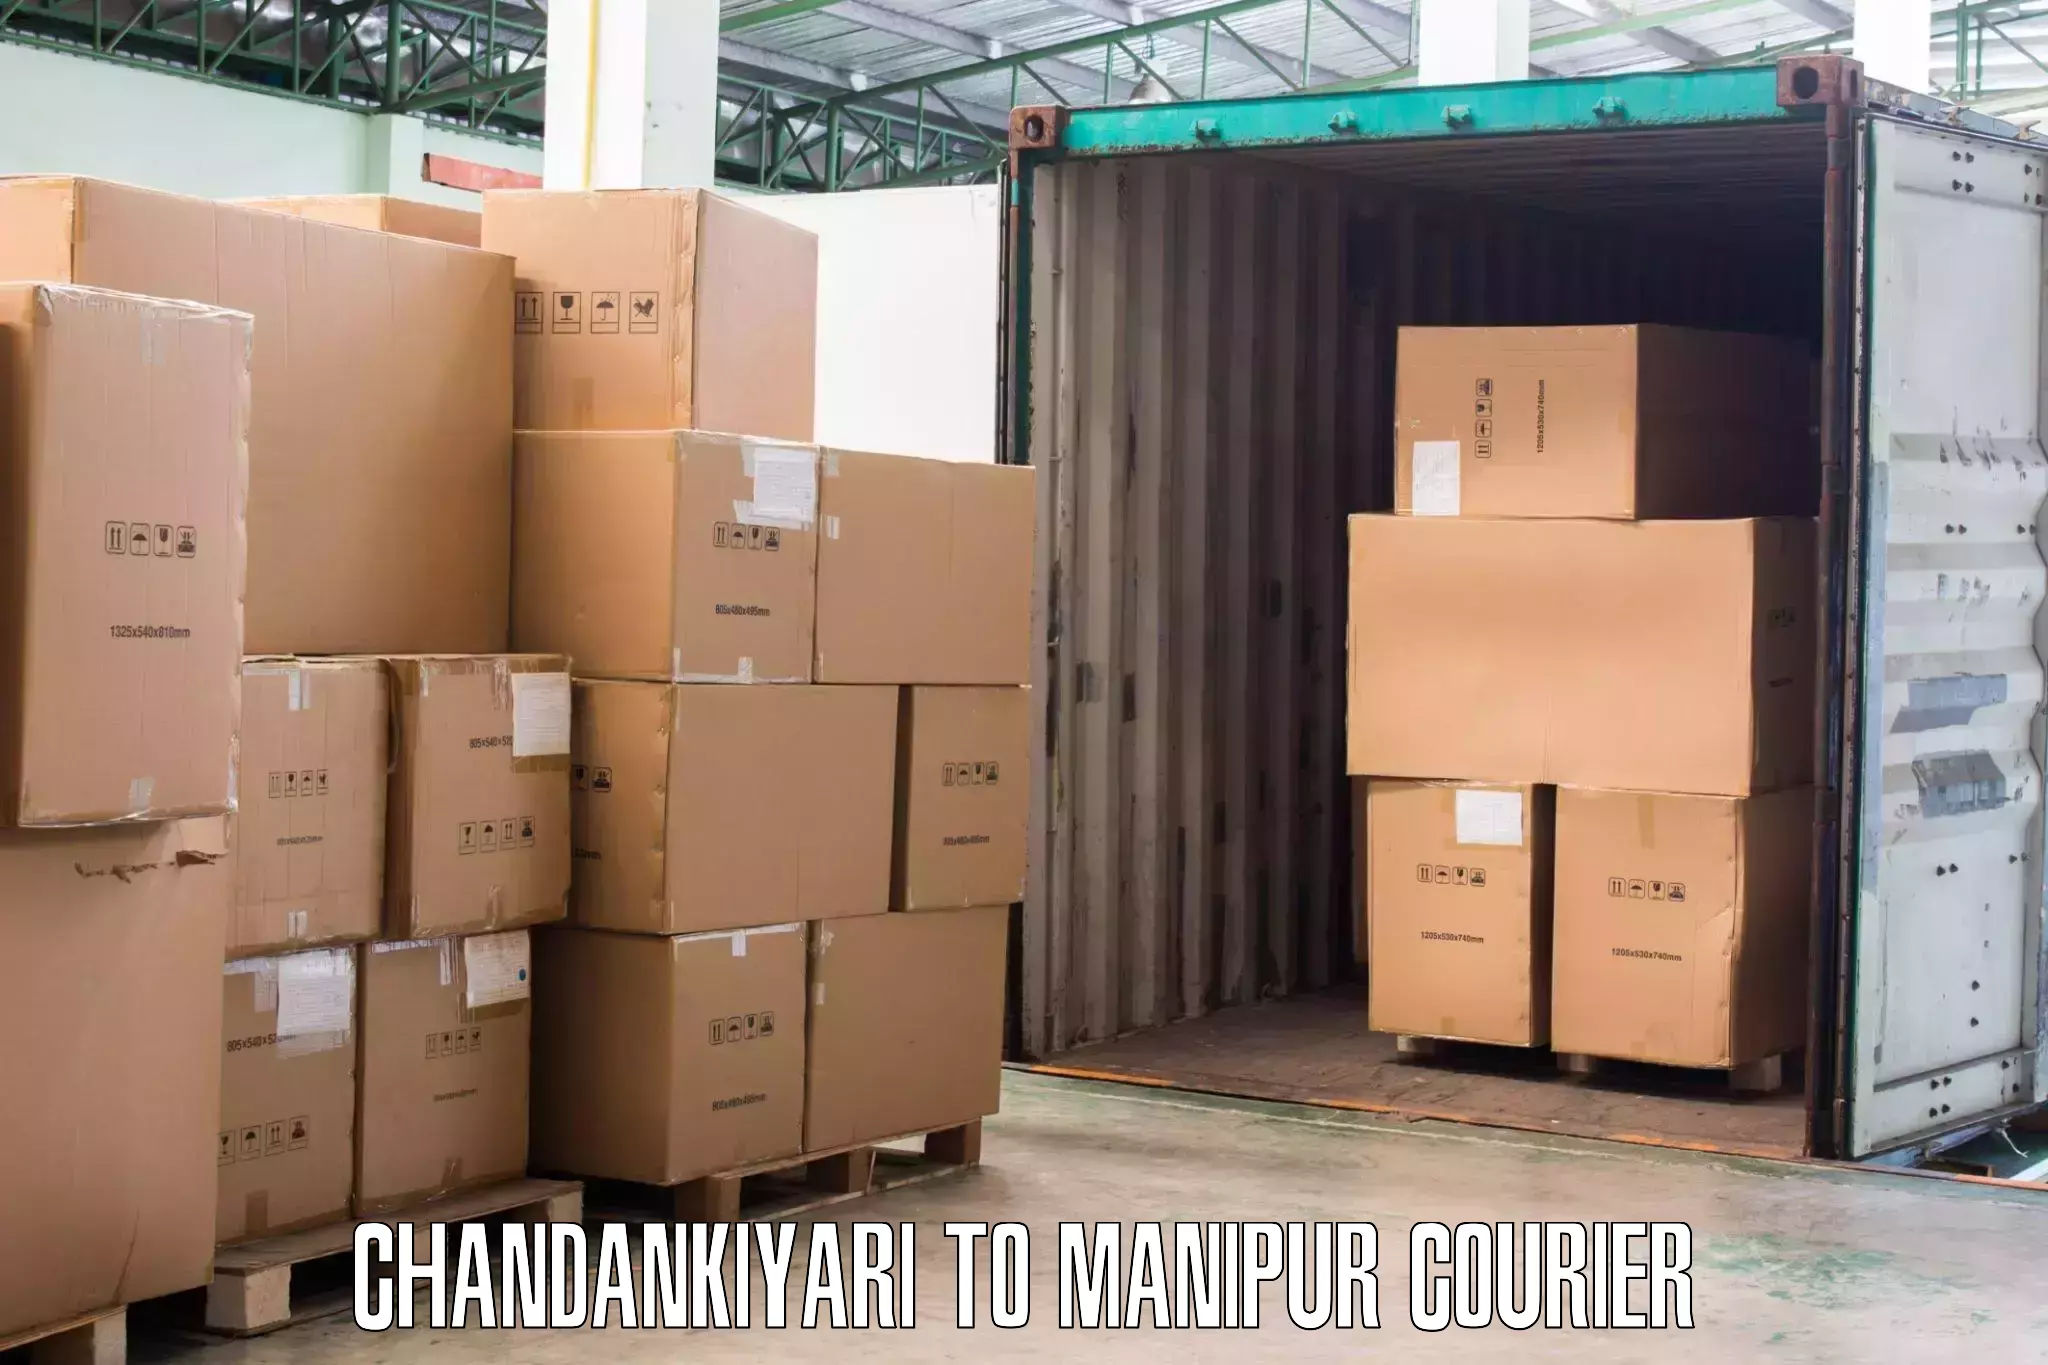 Personalized moving service Chandankiyari to Manipur